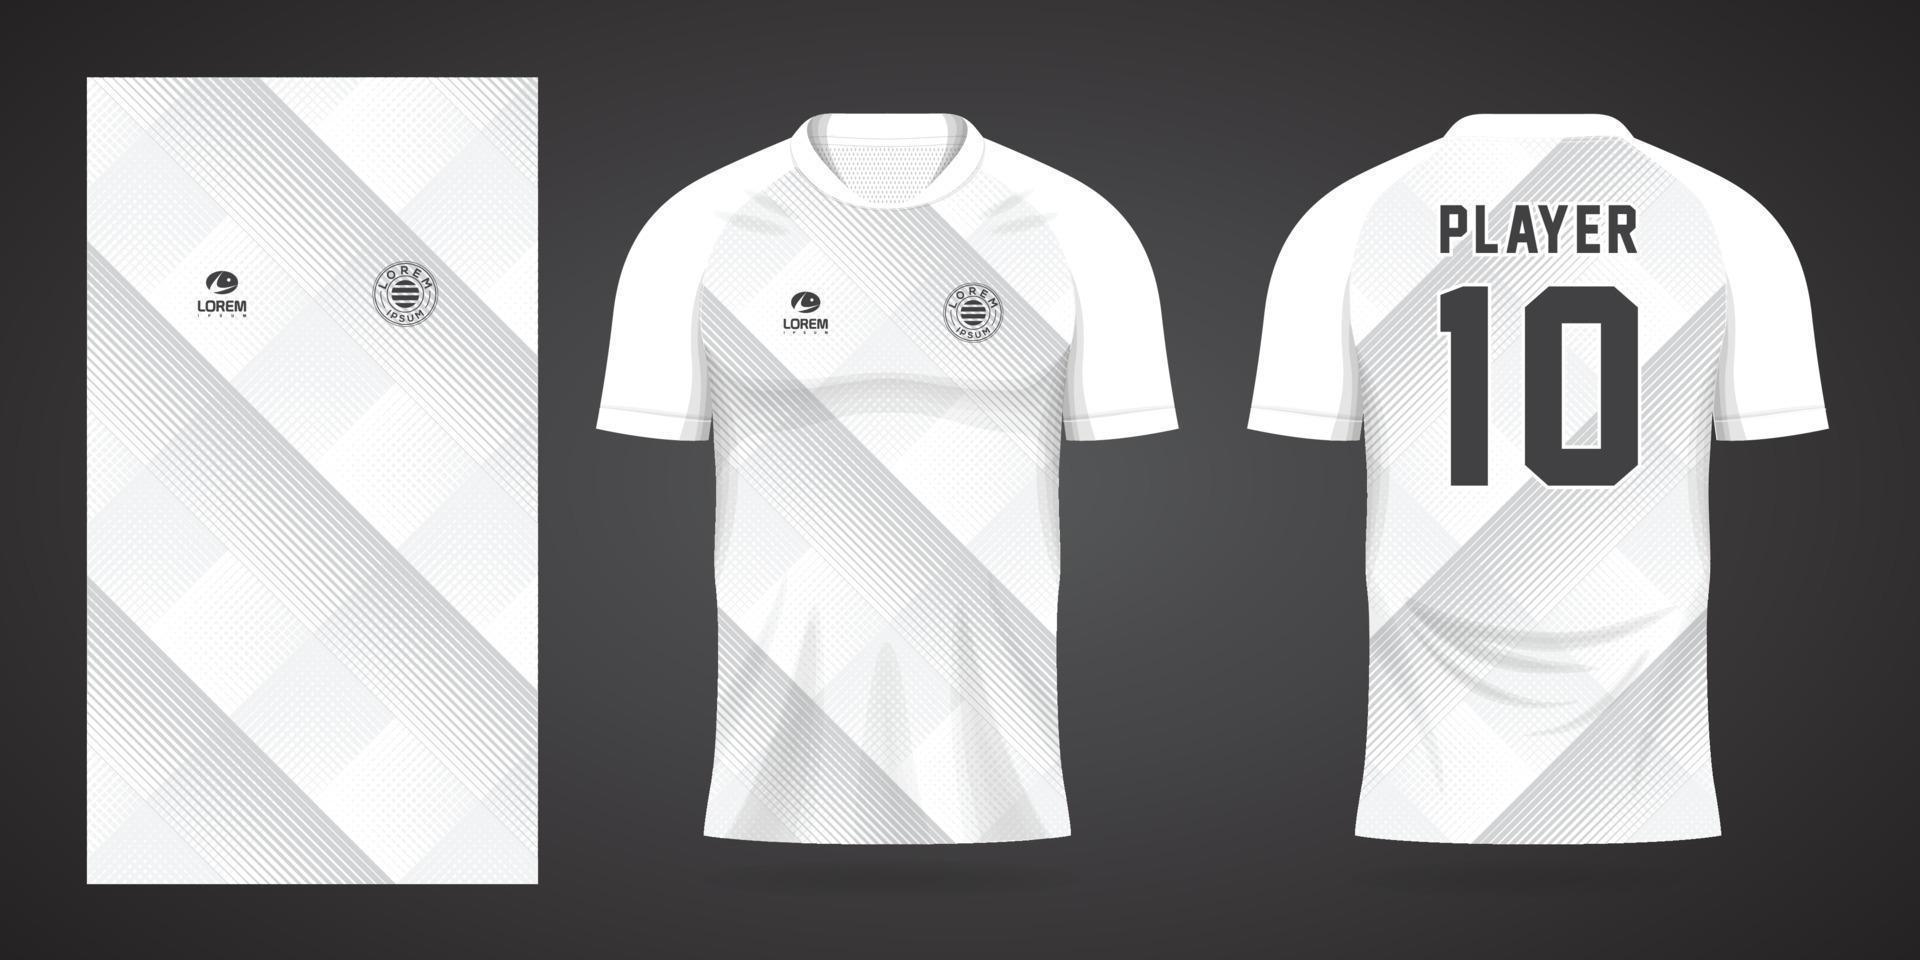 plantilla de diseño deportivo de camiseta de fútbol blanca vector